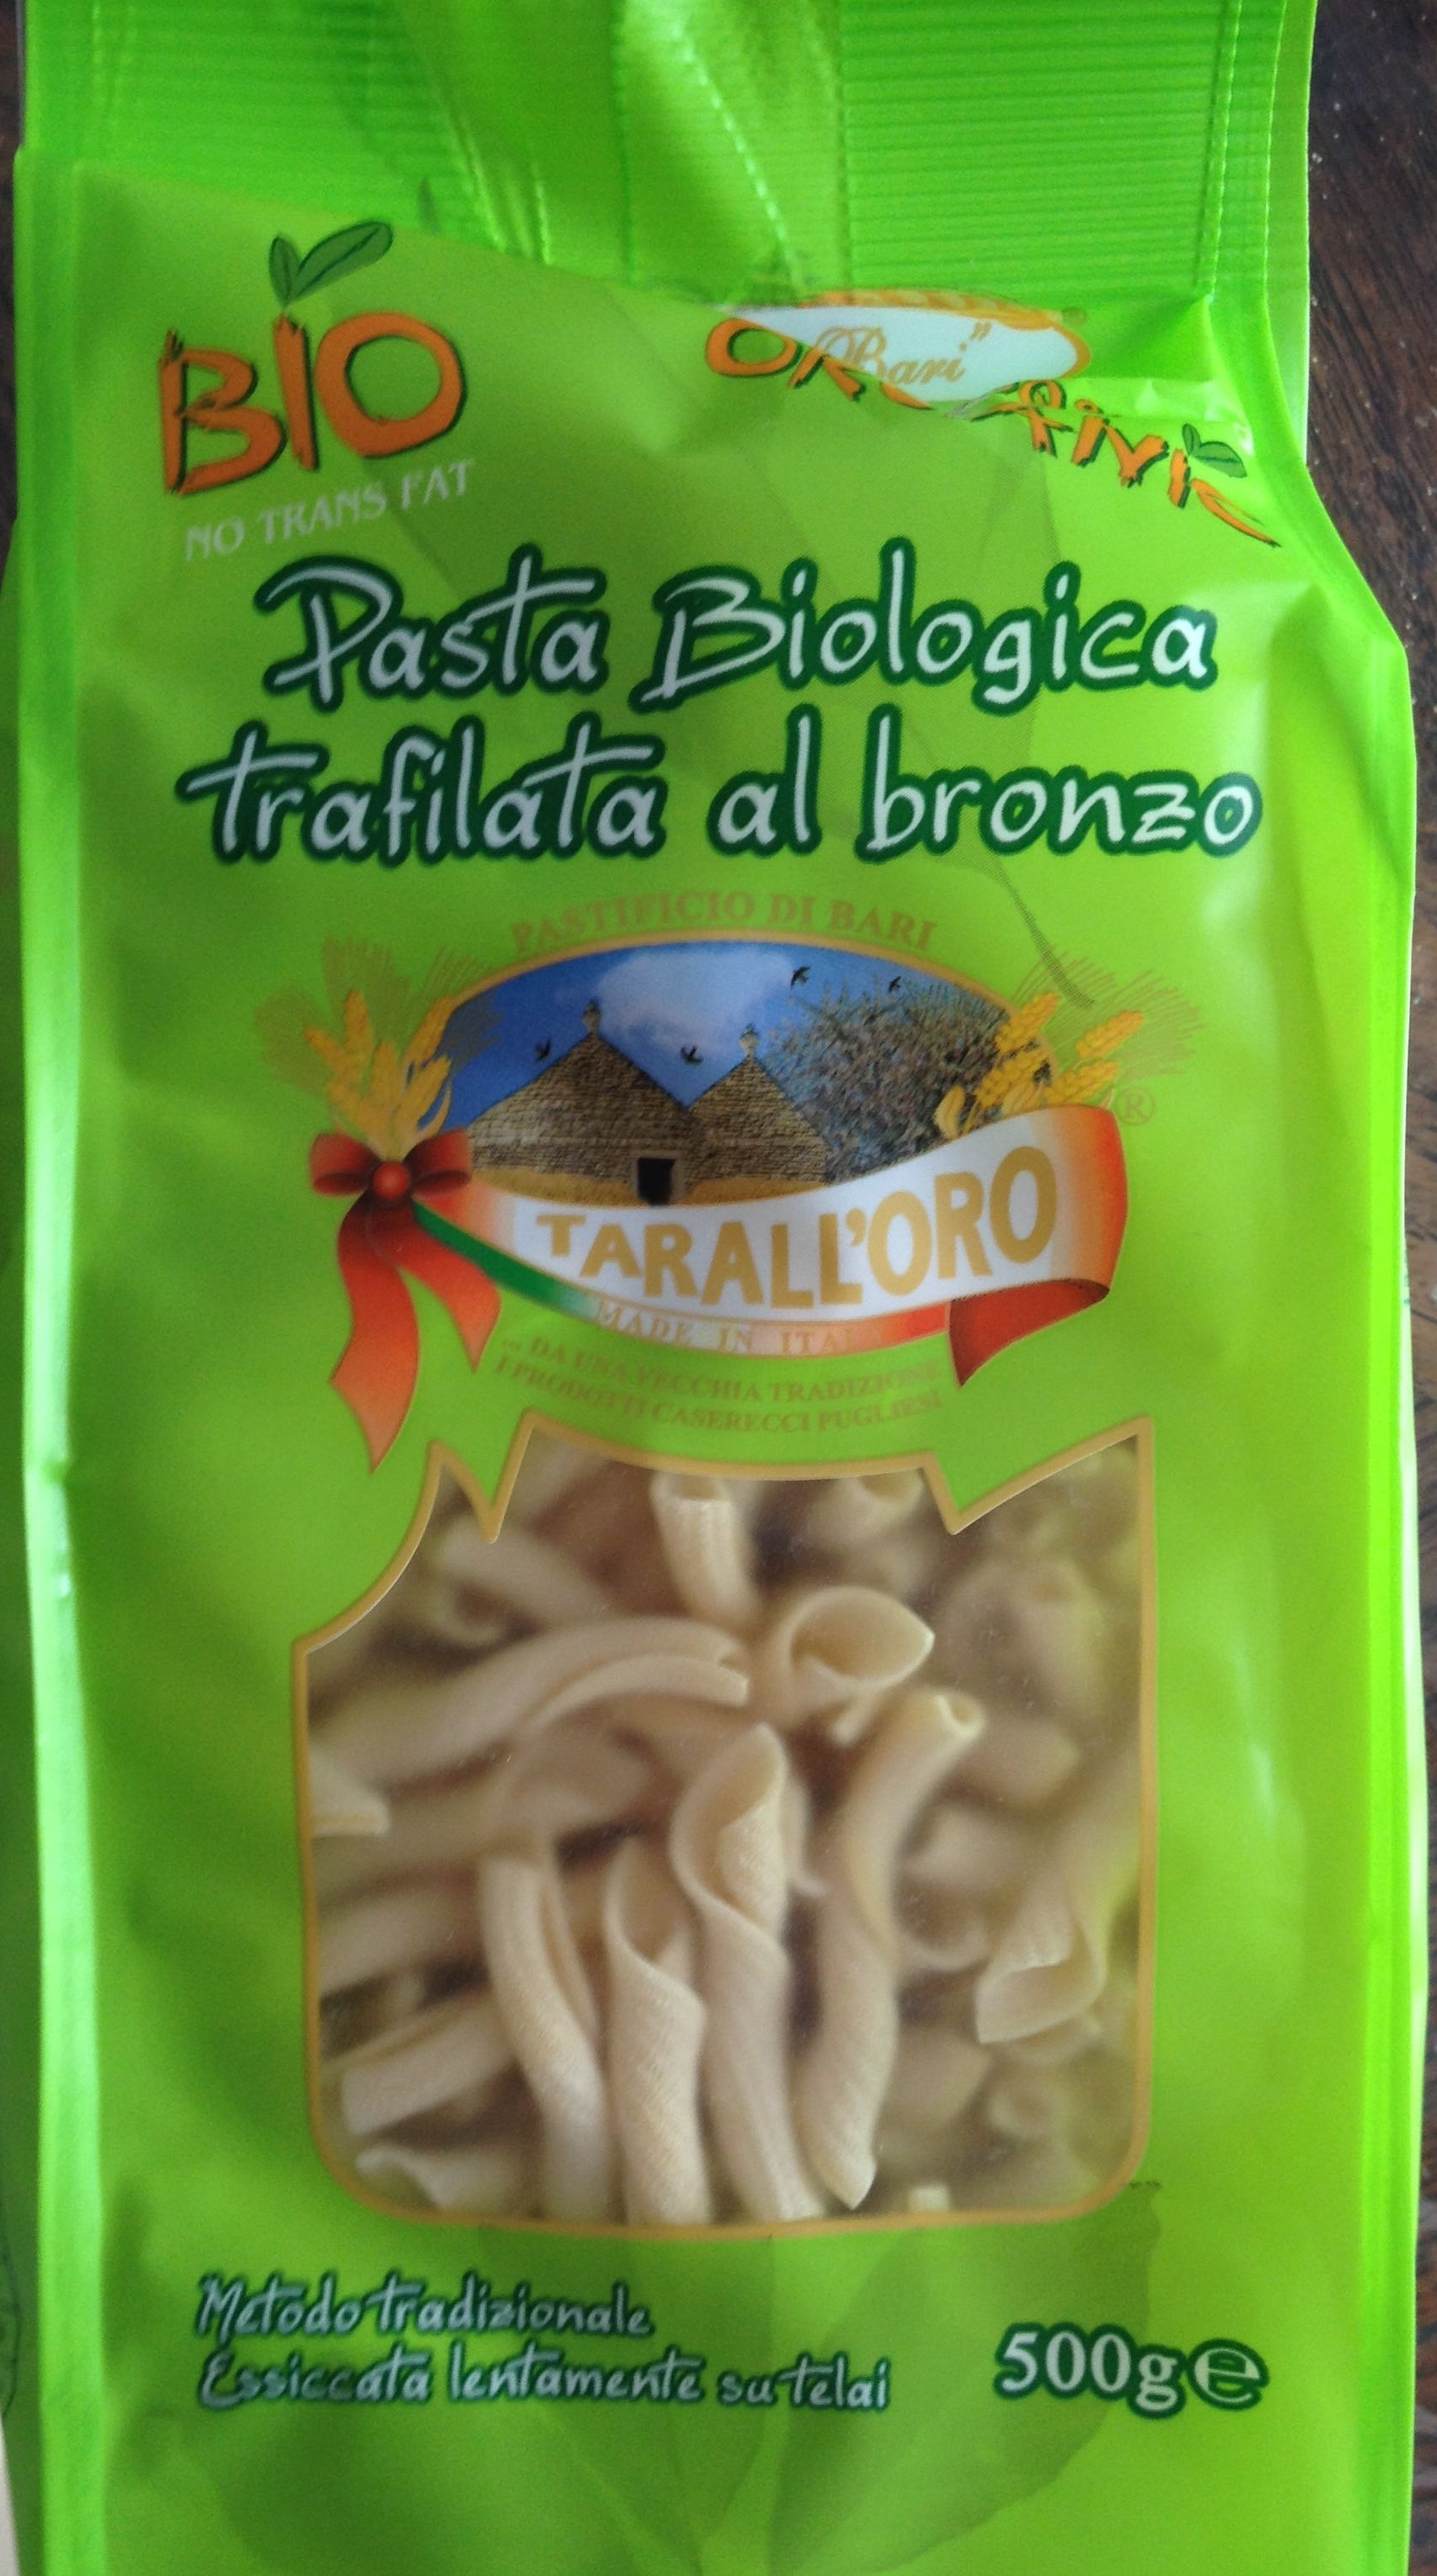 Pasta Biologica (Trafilata al bronzo) Torchietti - Producto - fr